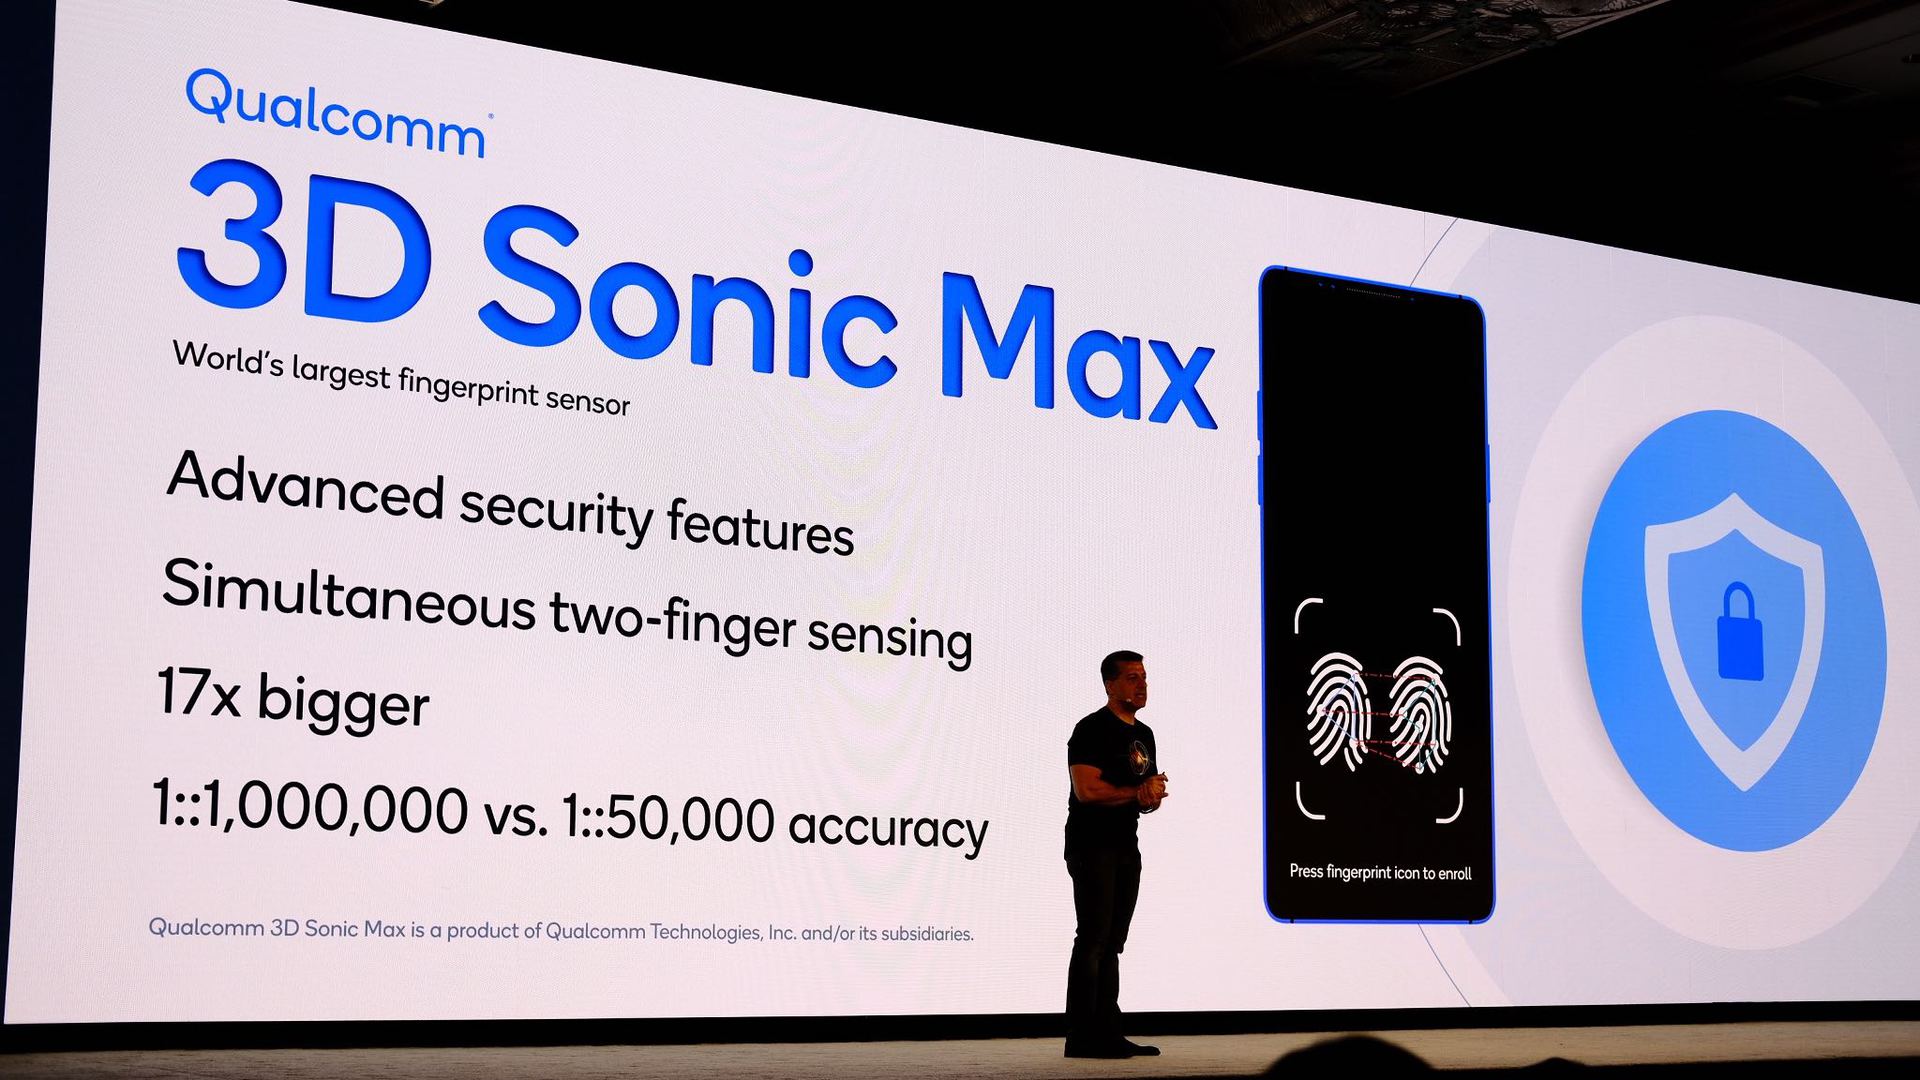 高通公司3D Sonic Max Slide Tech峰会